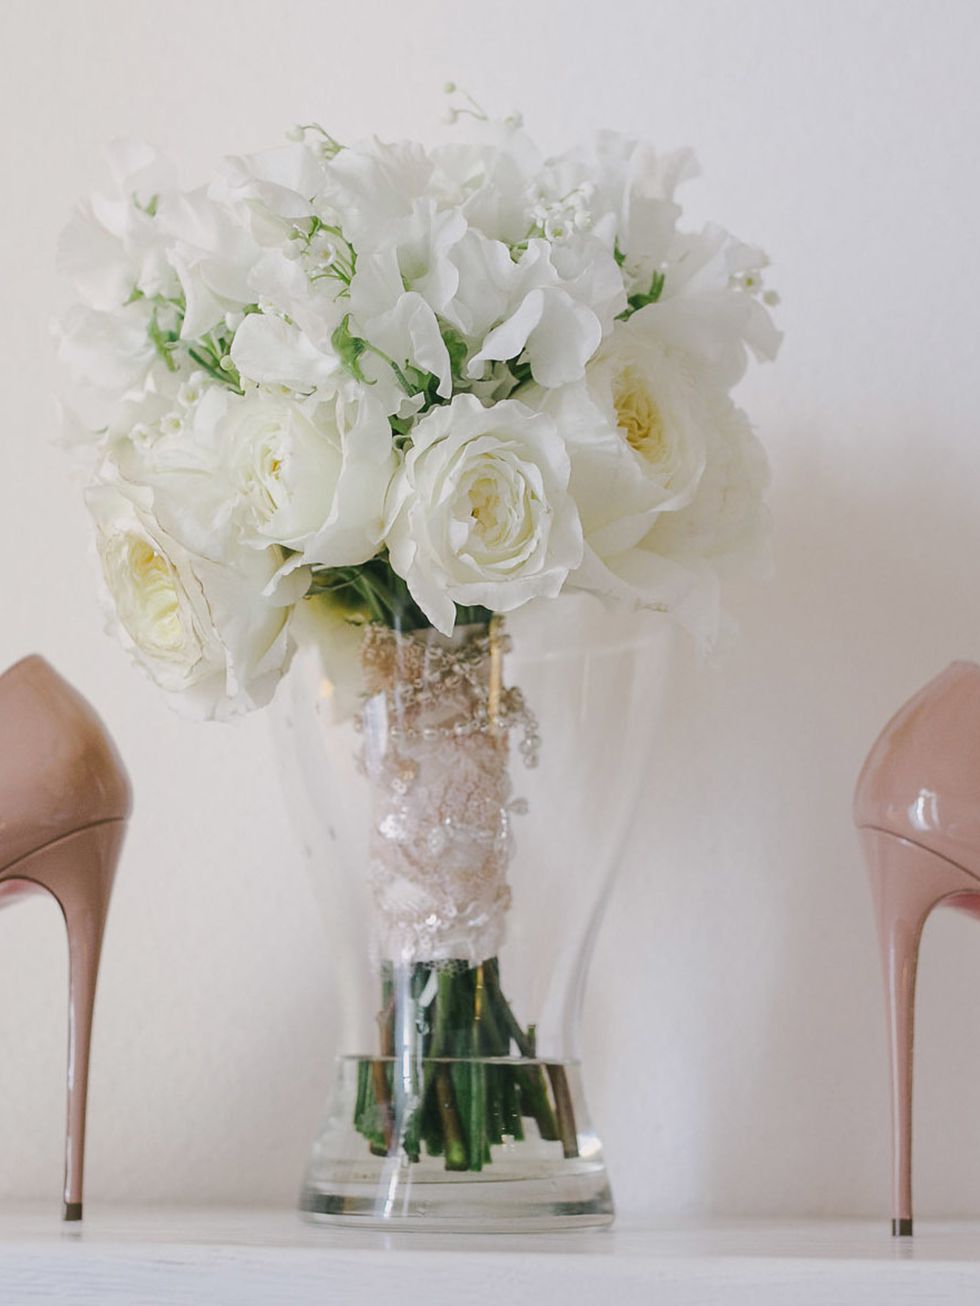 Footwear, High heels, Petal, Bouquet, Flower, Pink, Cut flowers, Sandal, Basic pump, Still life photography, 